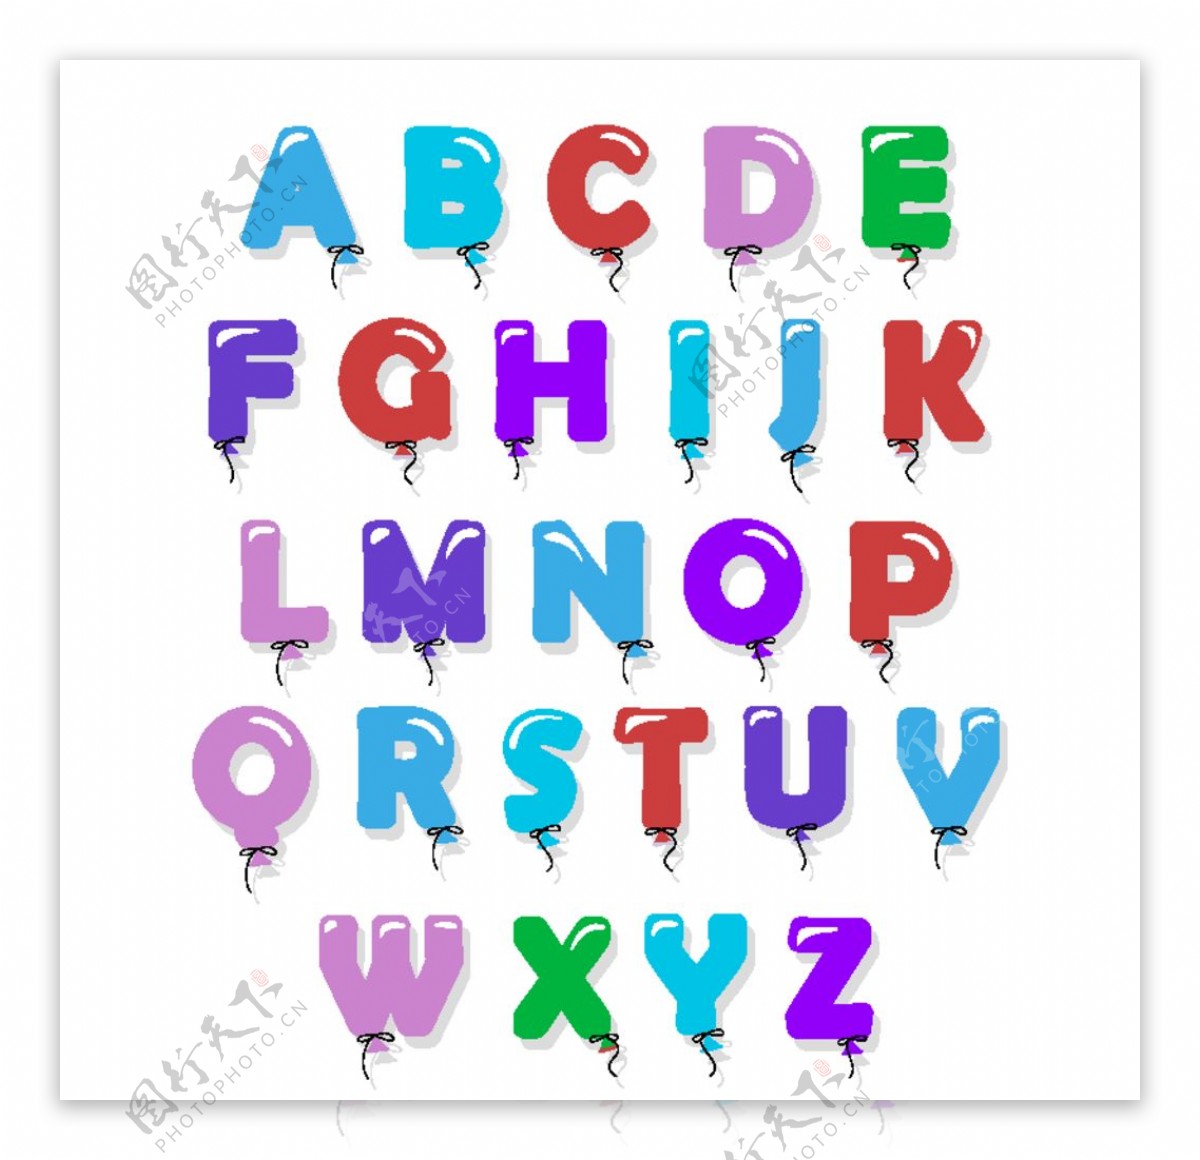 创意糖果气球字母